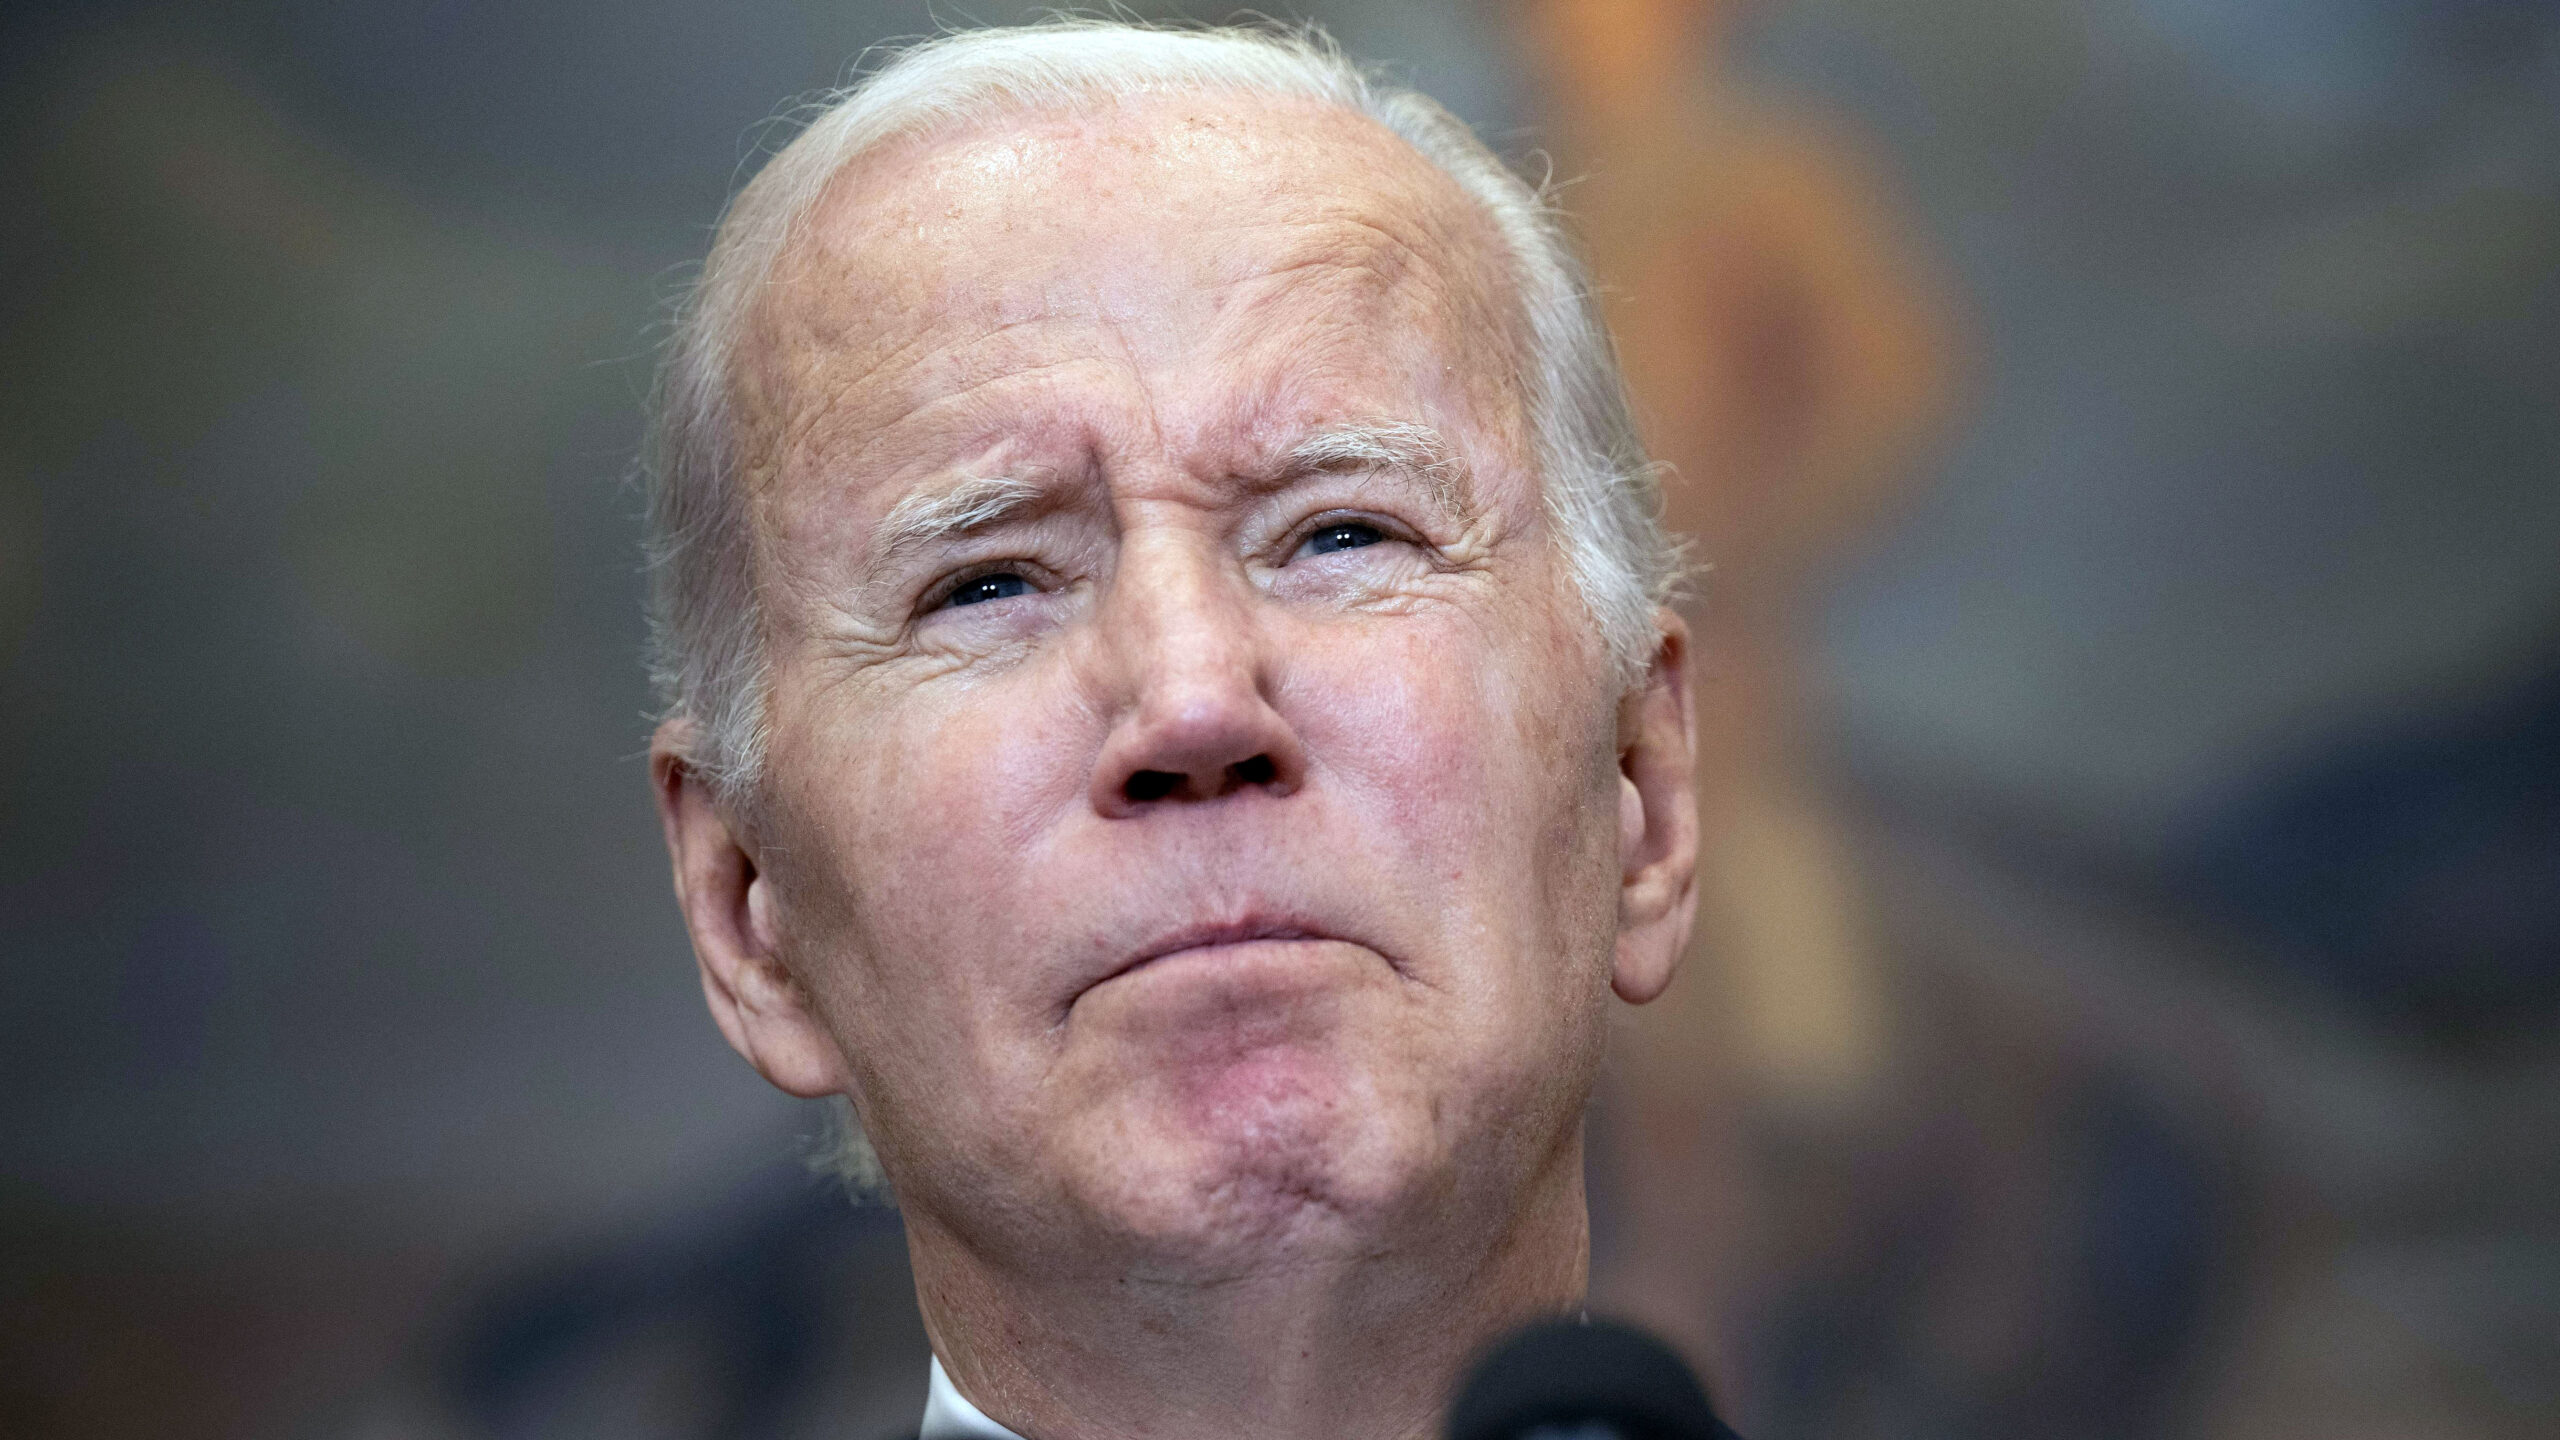 Top Democrat Senator Blasts Biden Over Releasing Terrorist For Griner: ‘Deeply Disturbing Decision’